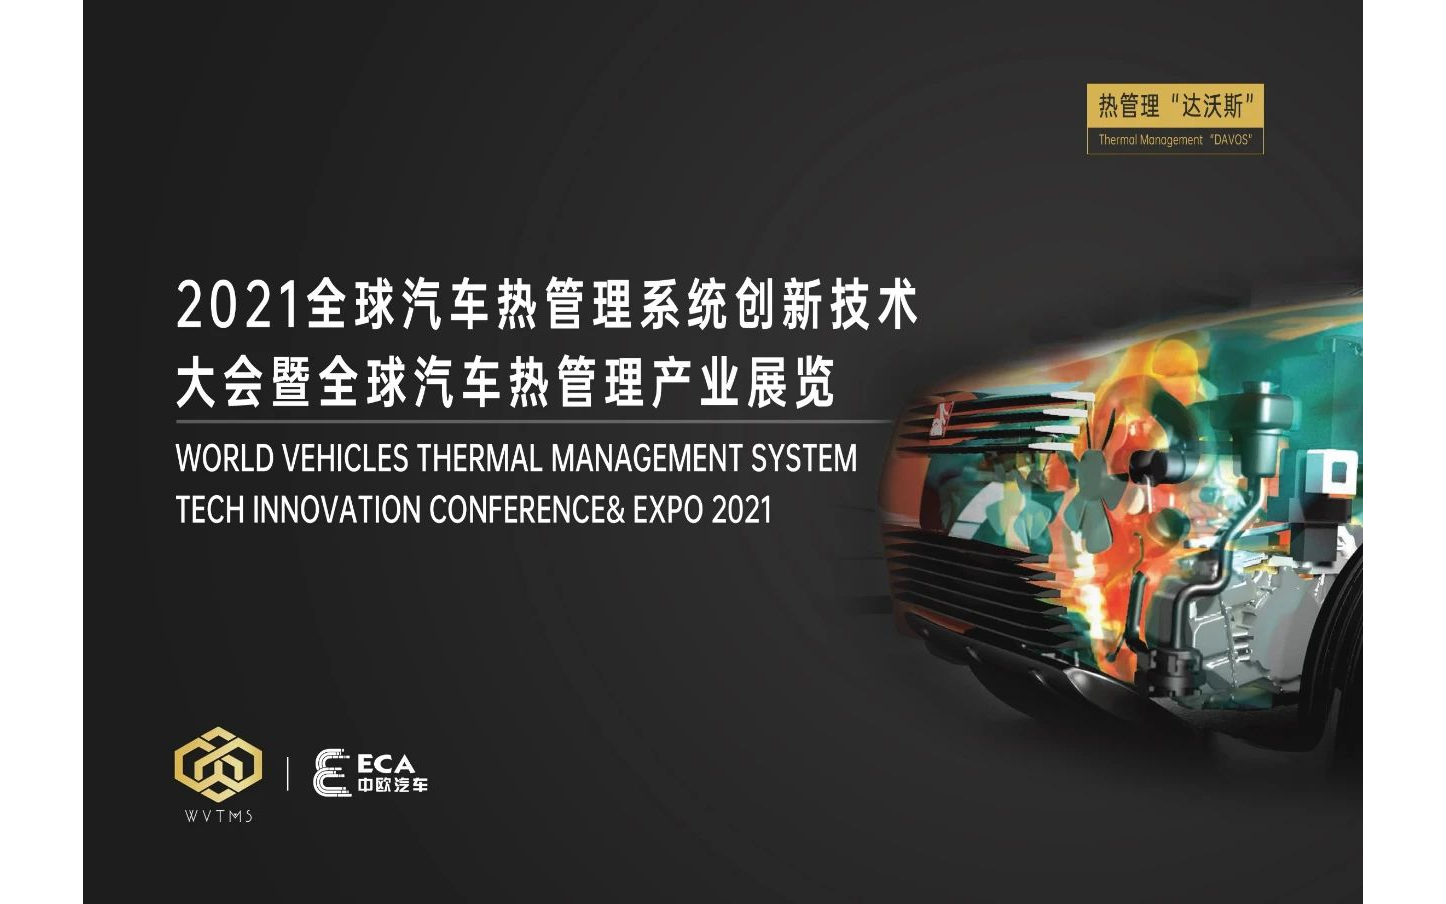 2021全球汽车热管理系统创新技术大会暨全球汽车热管理产业展览